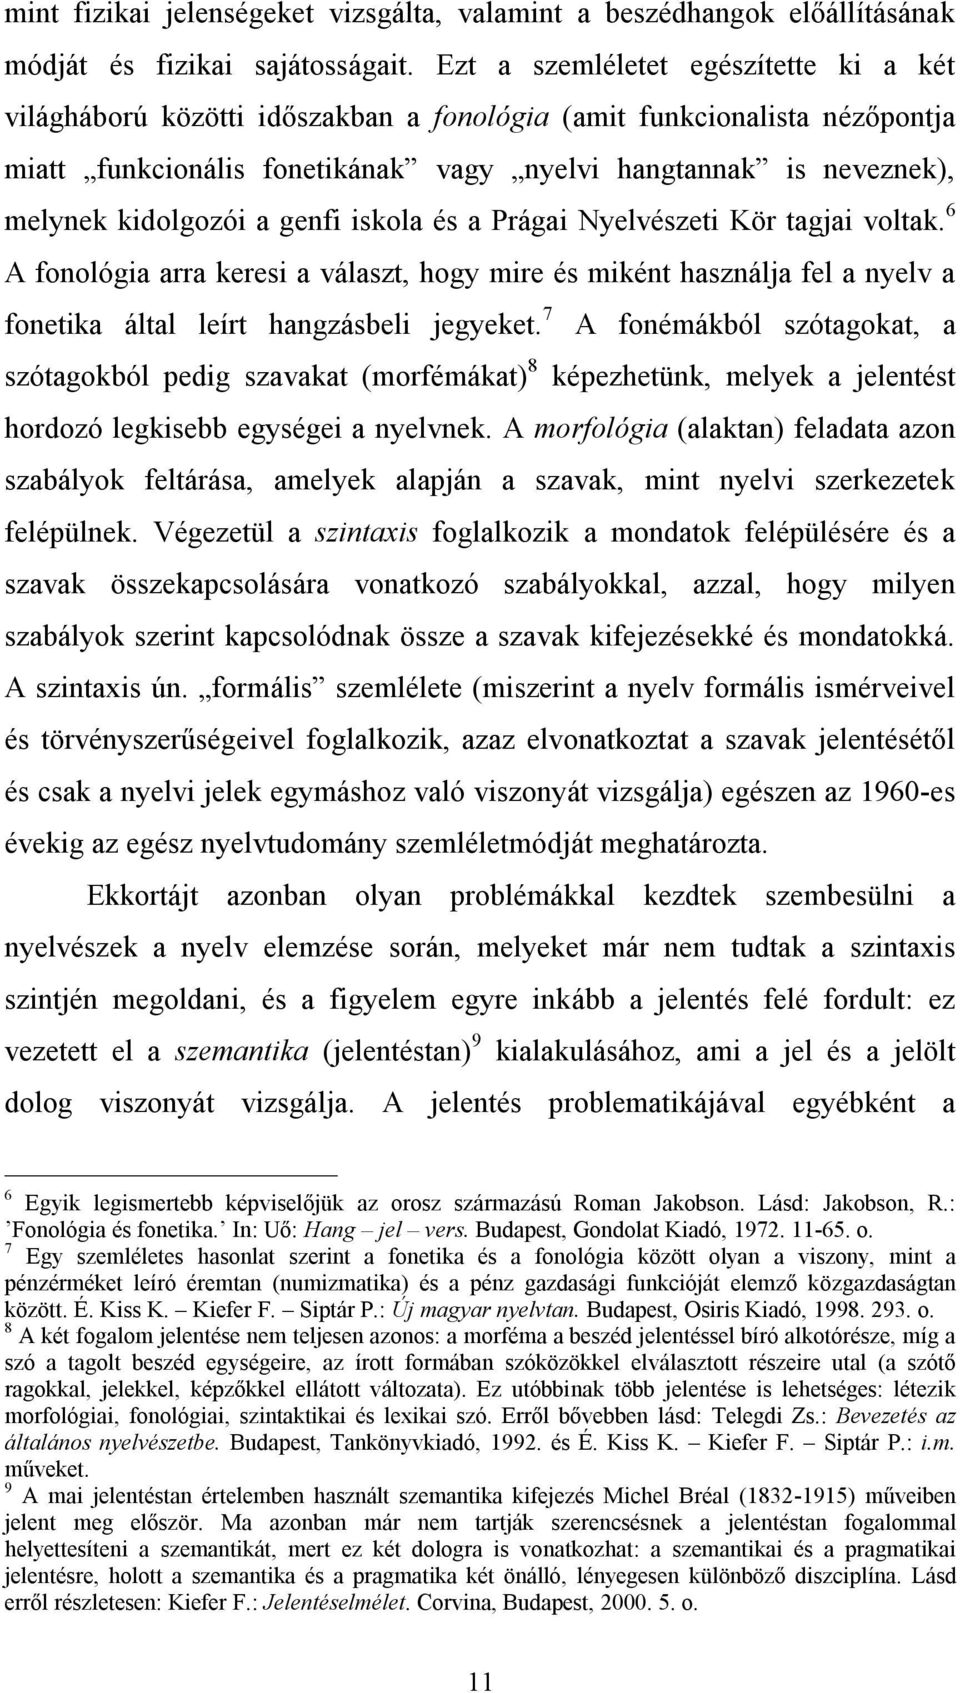 kidolgozói a genfi iskola és a Prágai Nyelvészeti Kör tagjai voltak. 6 A fonológia arra keresi a választ, hogy mire és miként használja fel a nyelv a fonetika által leírt hangzásbeli jegyeket.